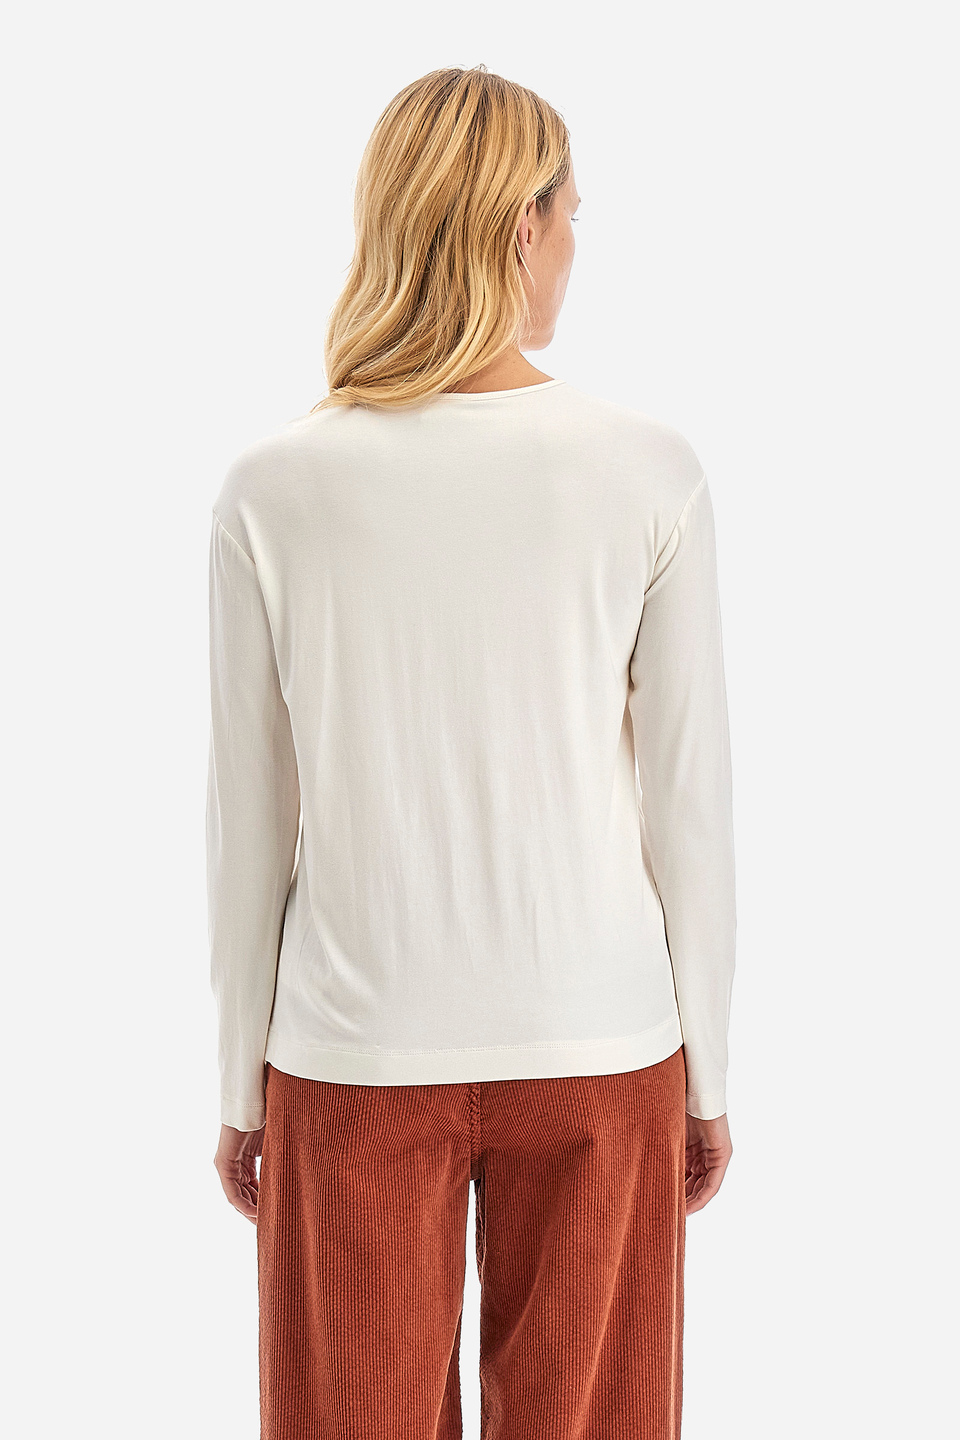 Tee-shirt femme coupe classique - Wyetta | La Martina - Official Online Shop